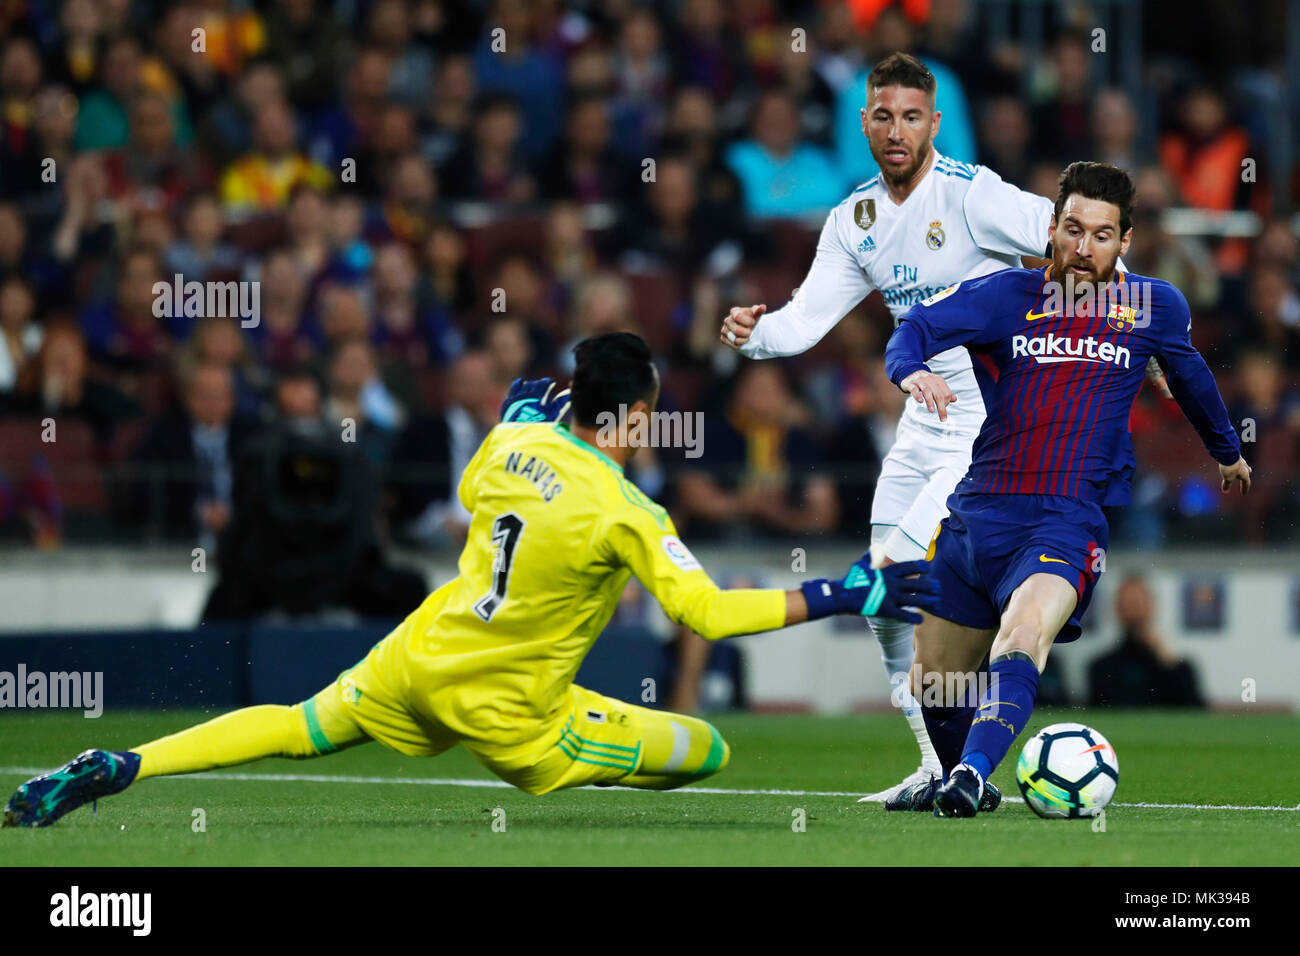 Barcelona, Spain. 6th May, 2018. Keylor Navas (Real), Lionel Messi  (Barcelona), May 6, 2018 - Football/Soccer : Spanish Primera Division "Liga  Santander" match between FC Barcelona 2-2 Real Madrid at Camp Nou